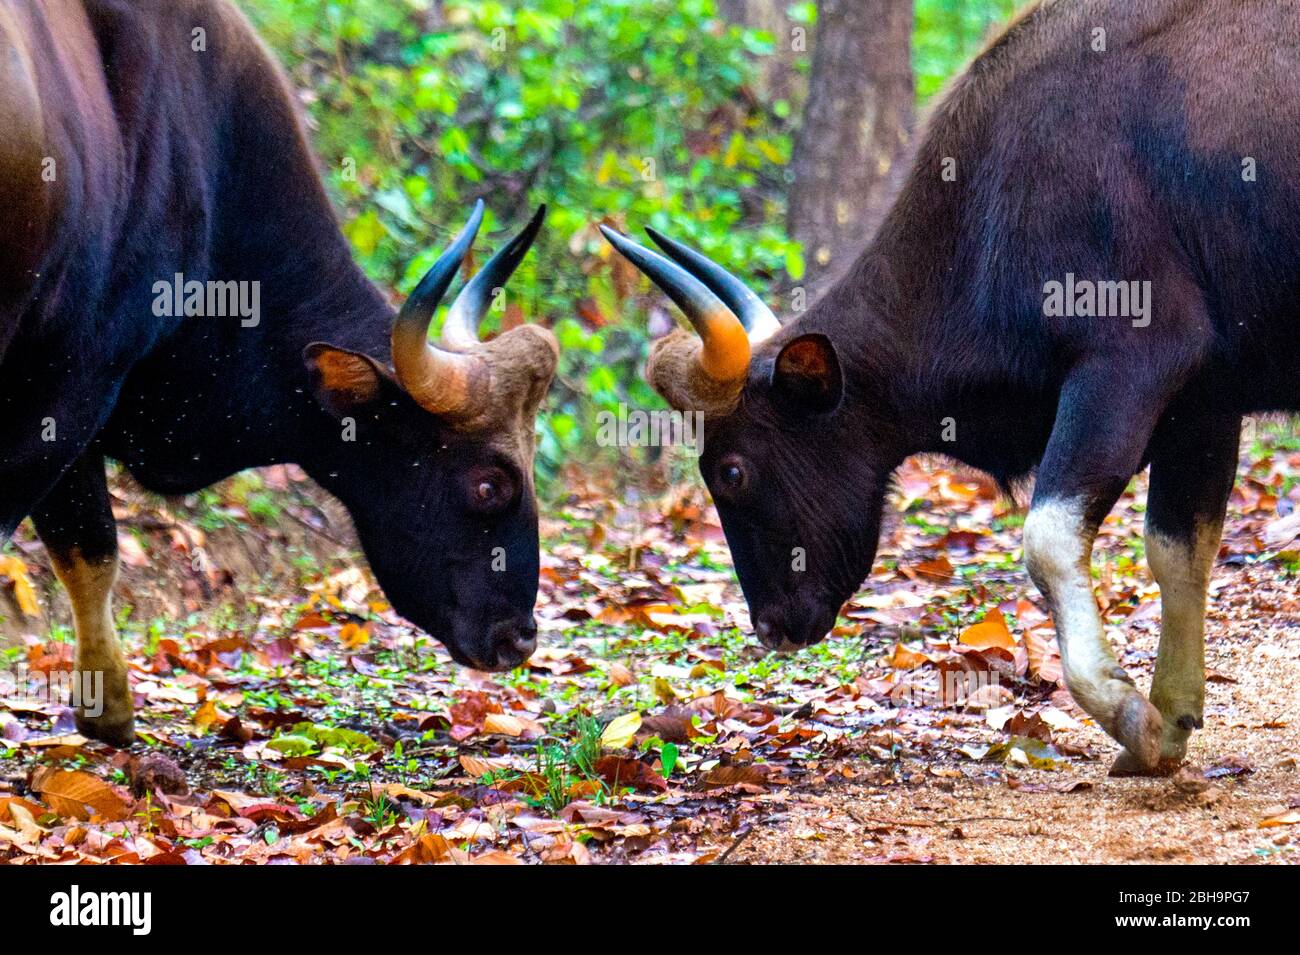 Deux geurs (bison indien), Inde Banque D'Images